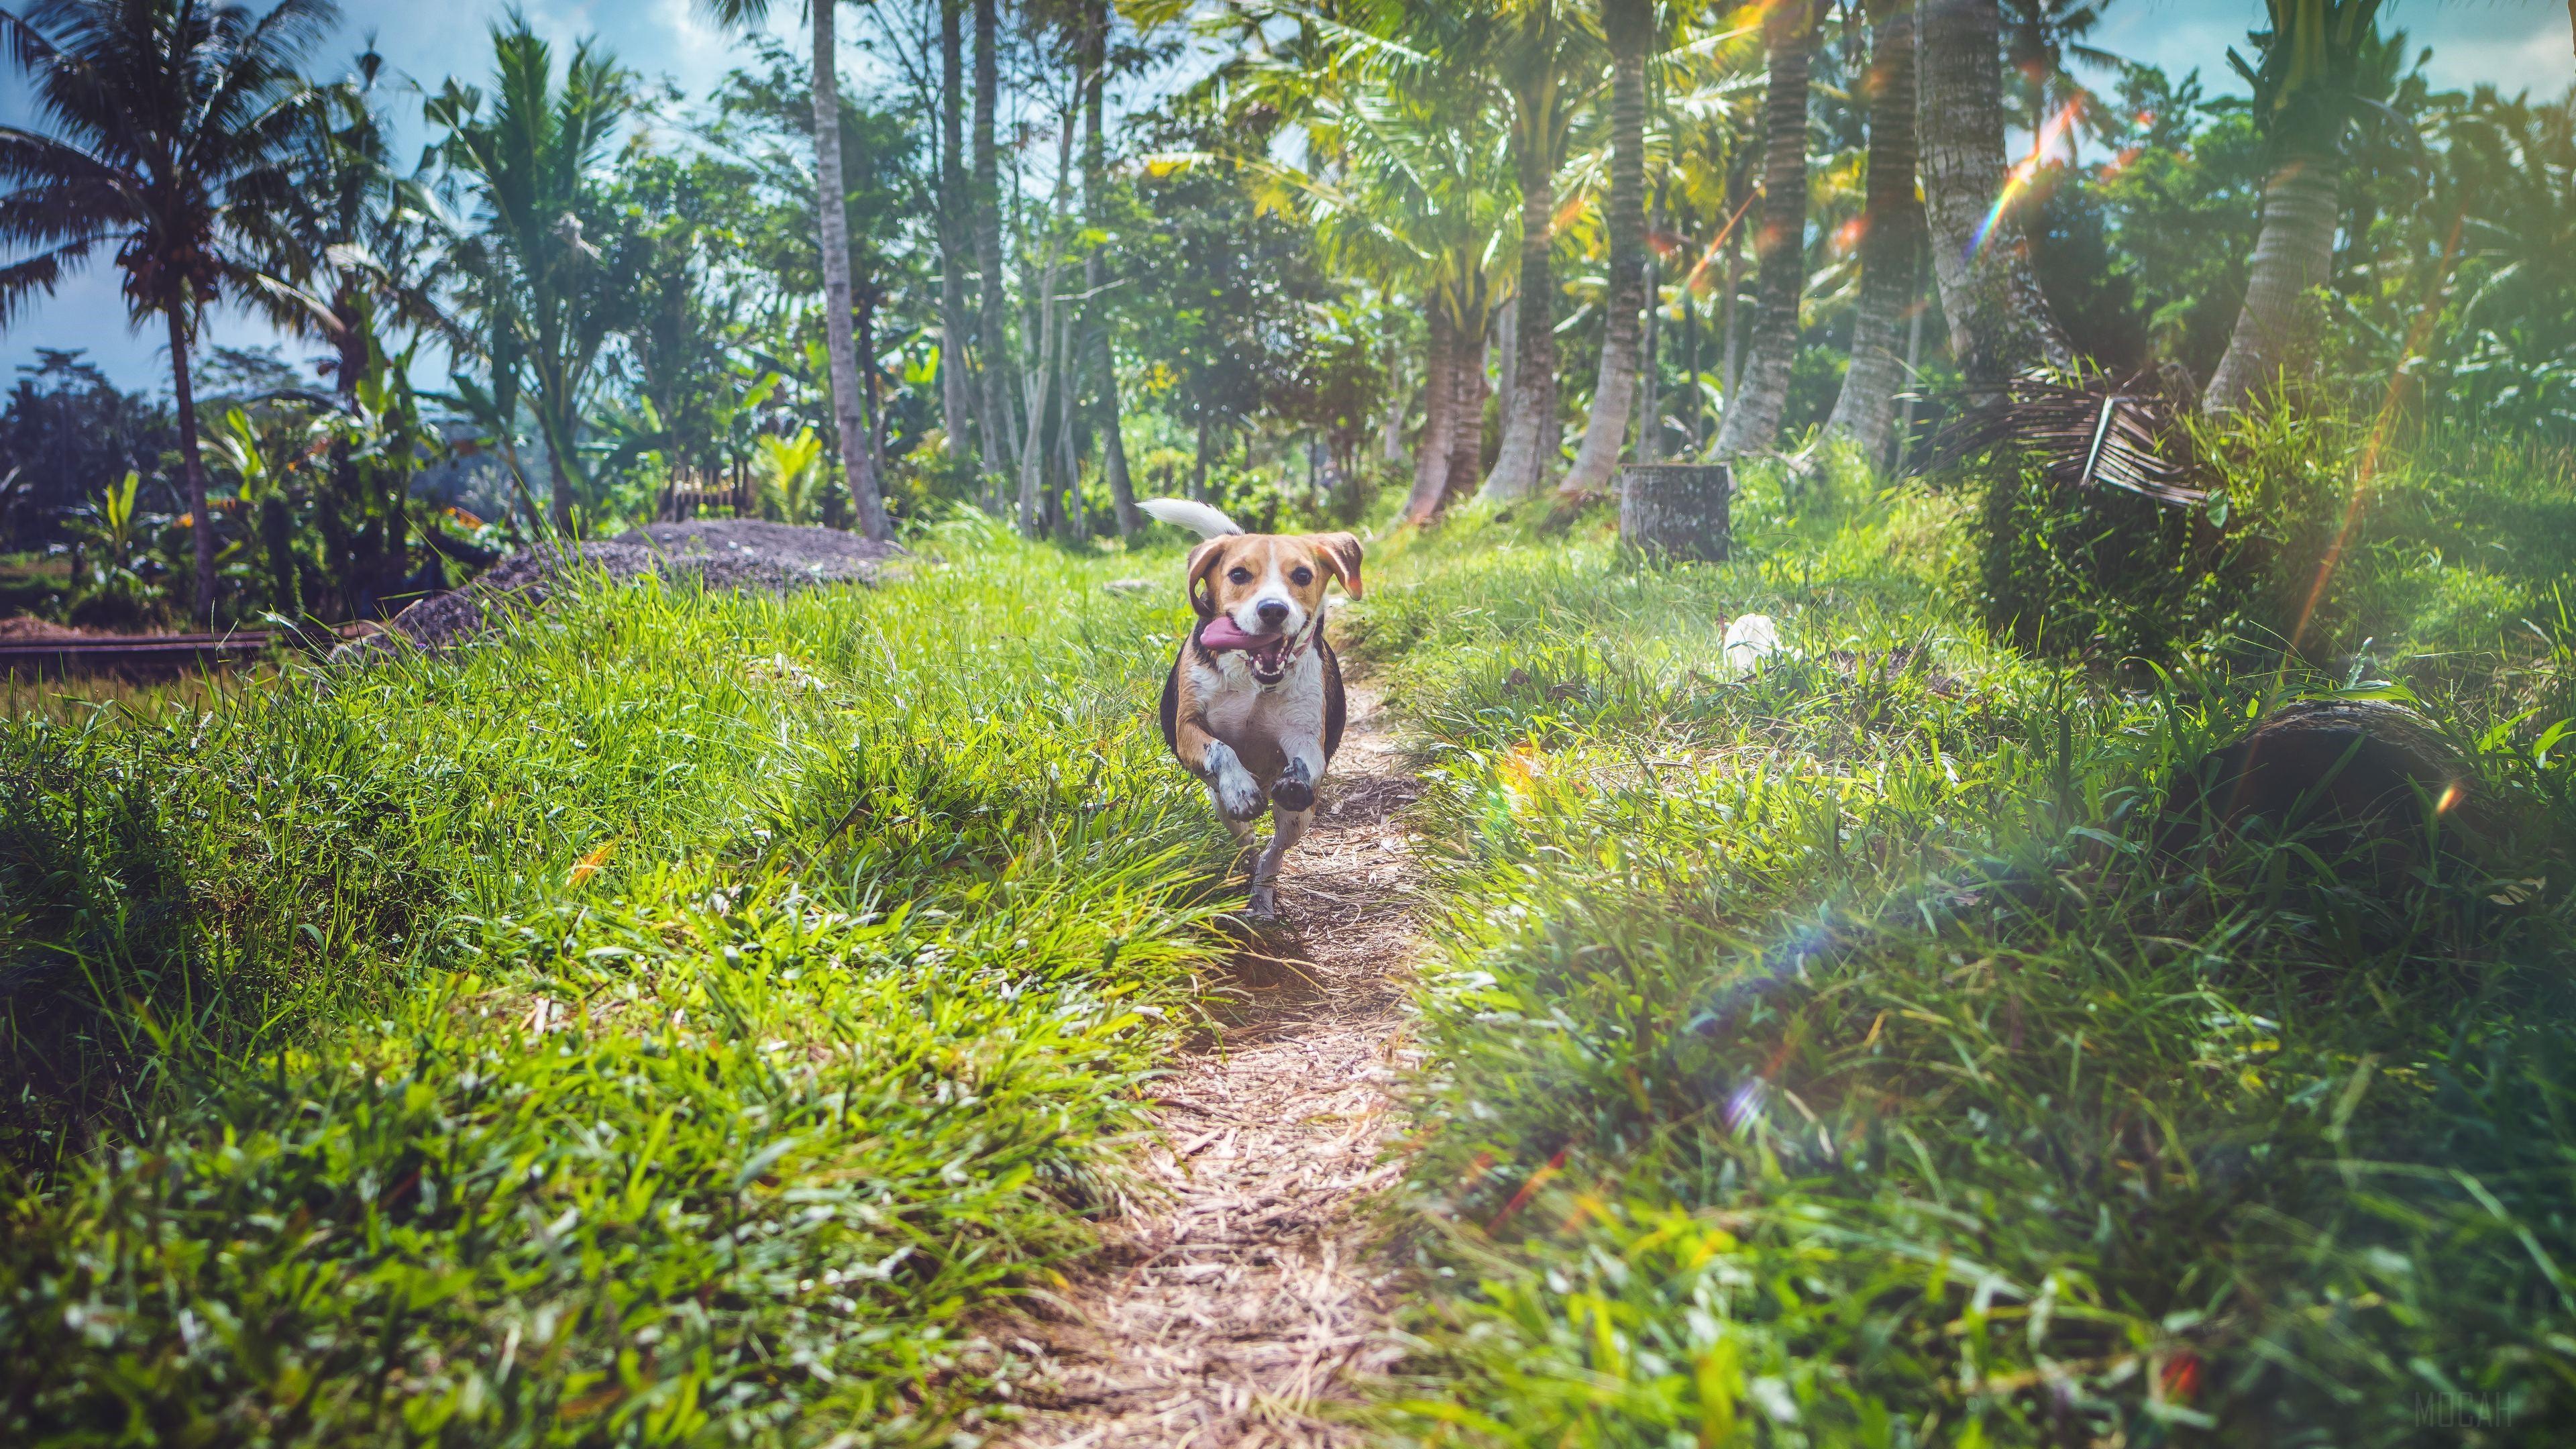 HD wallpaper, Beagle Dog In Joy 4K